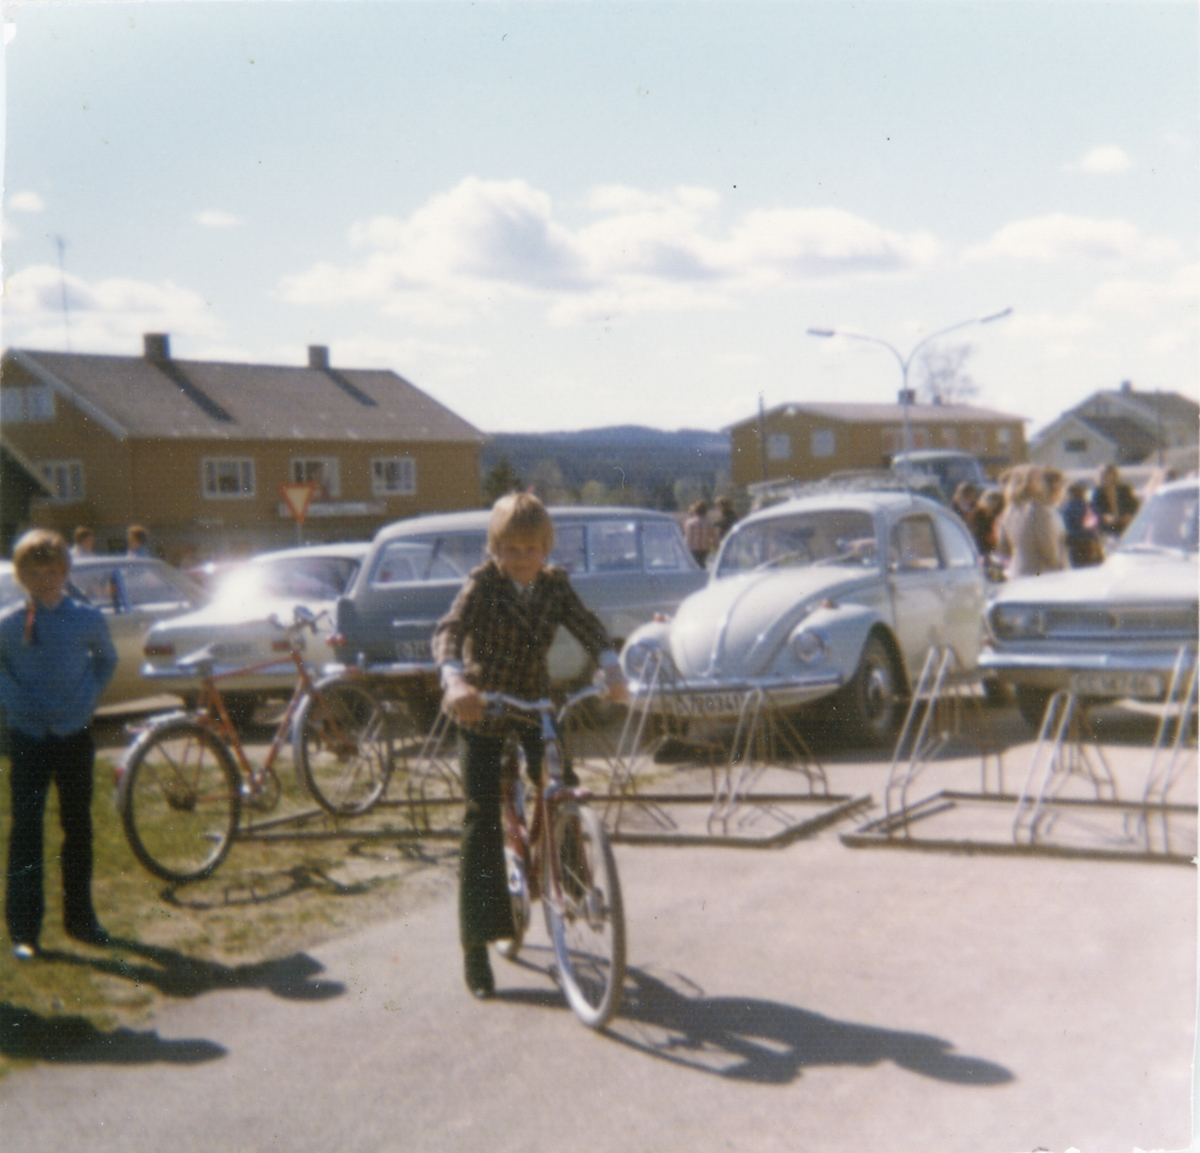 Gutter med sykkel fotografert på parkeringsplassen utenfor Gjerdrum barneskole 17. mai